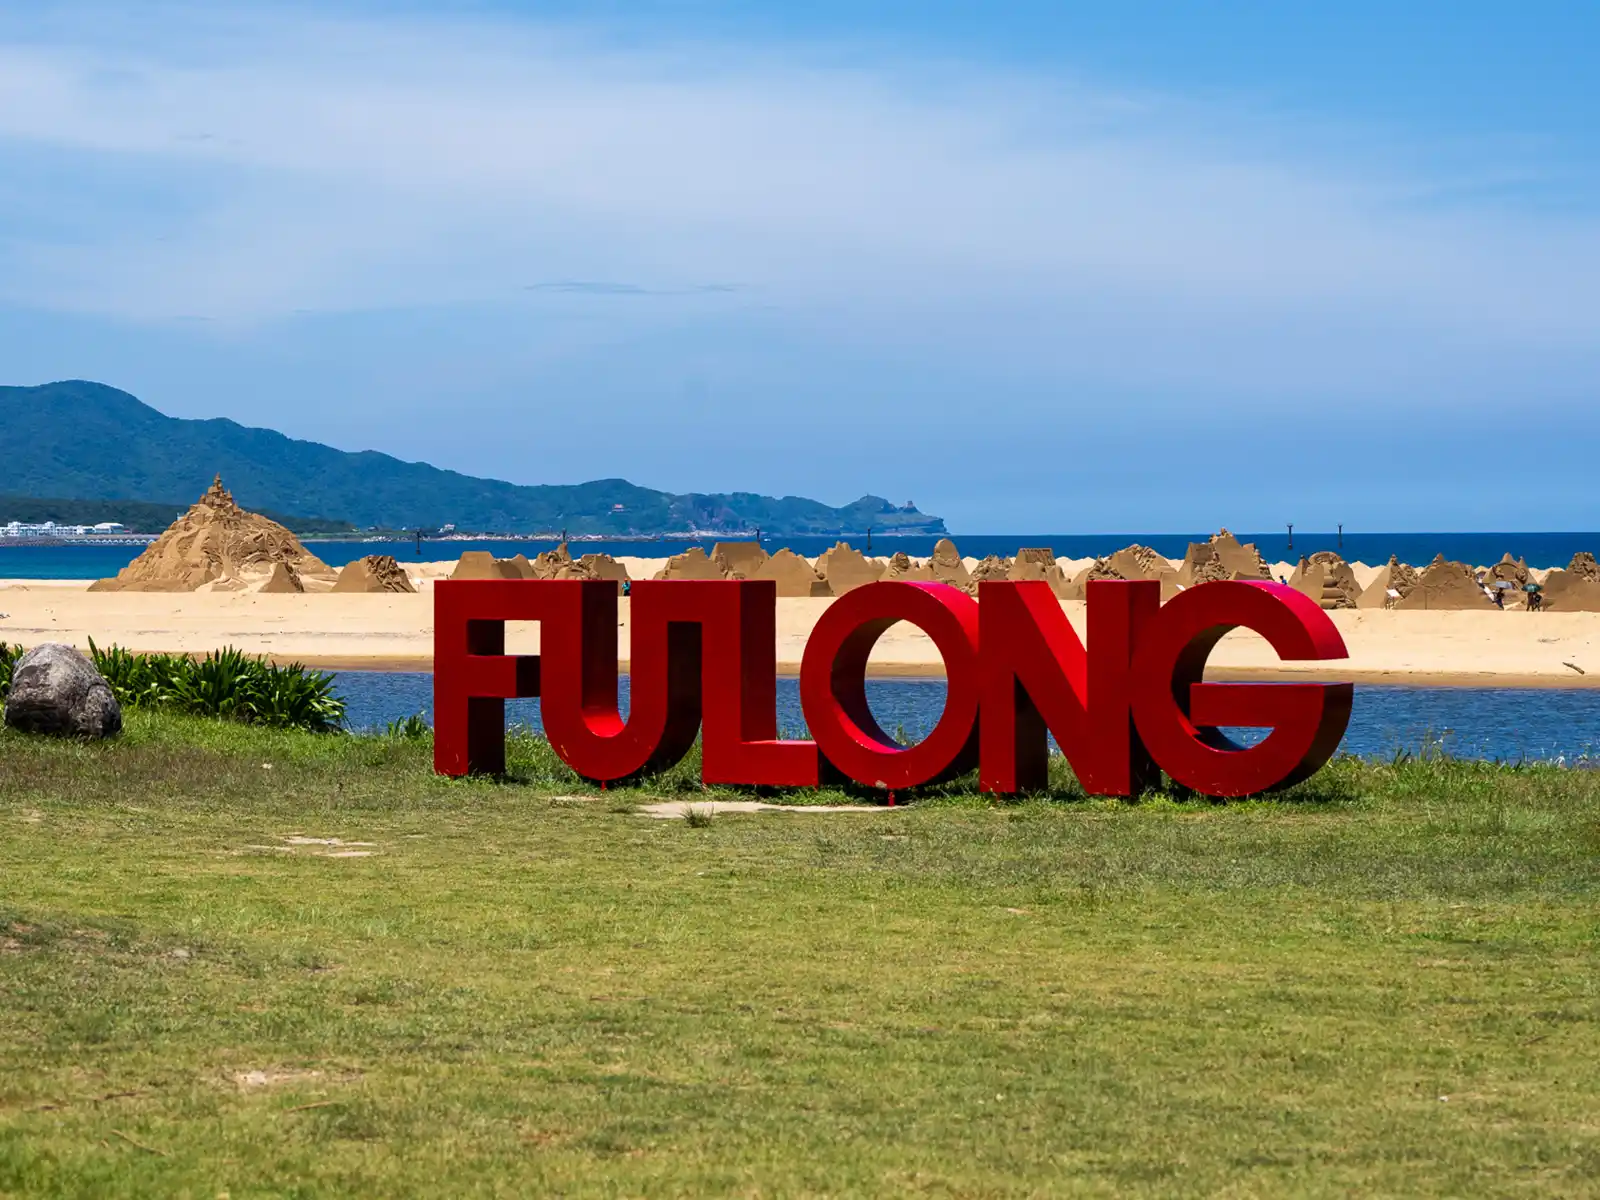 A landmark sculpture nearby the Fulong International Sand Sculpture Art Festival location